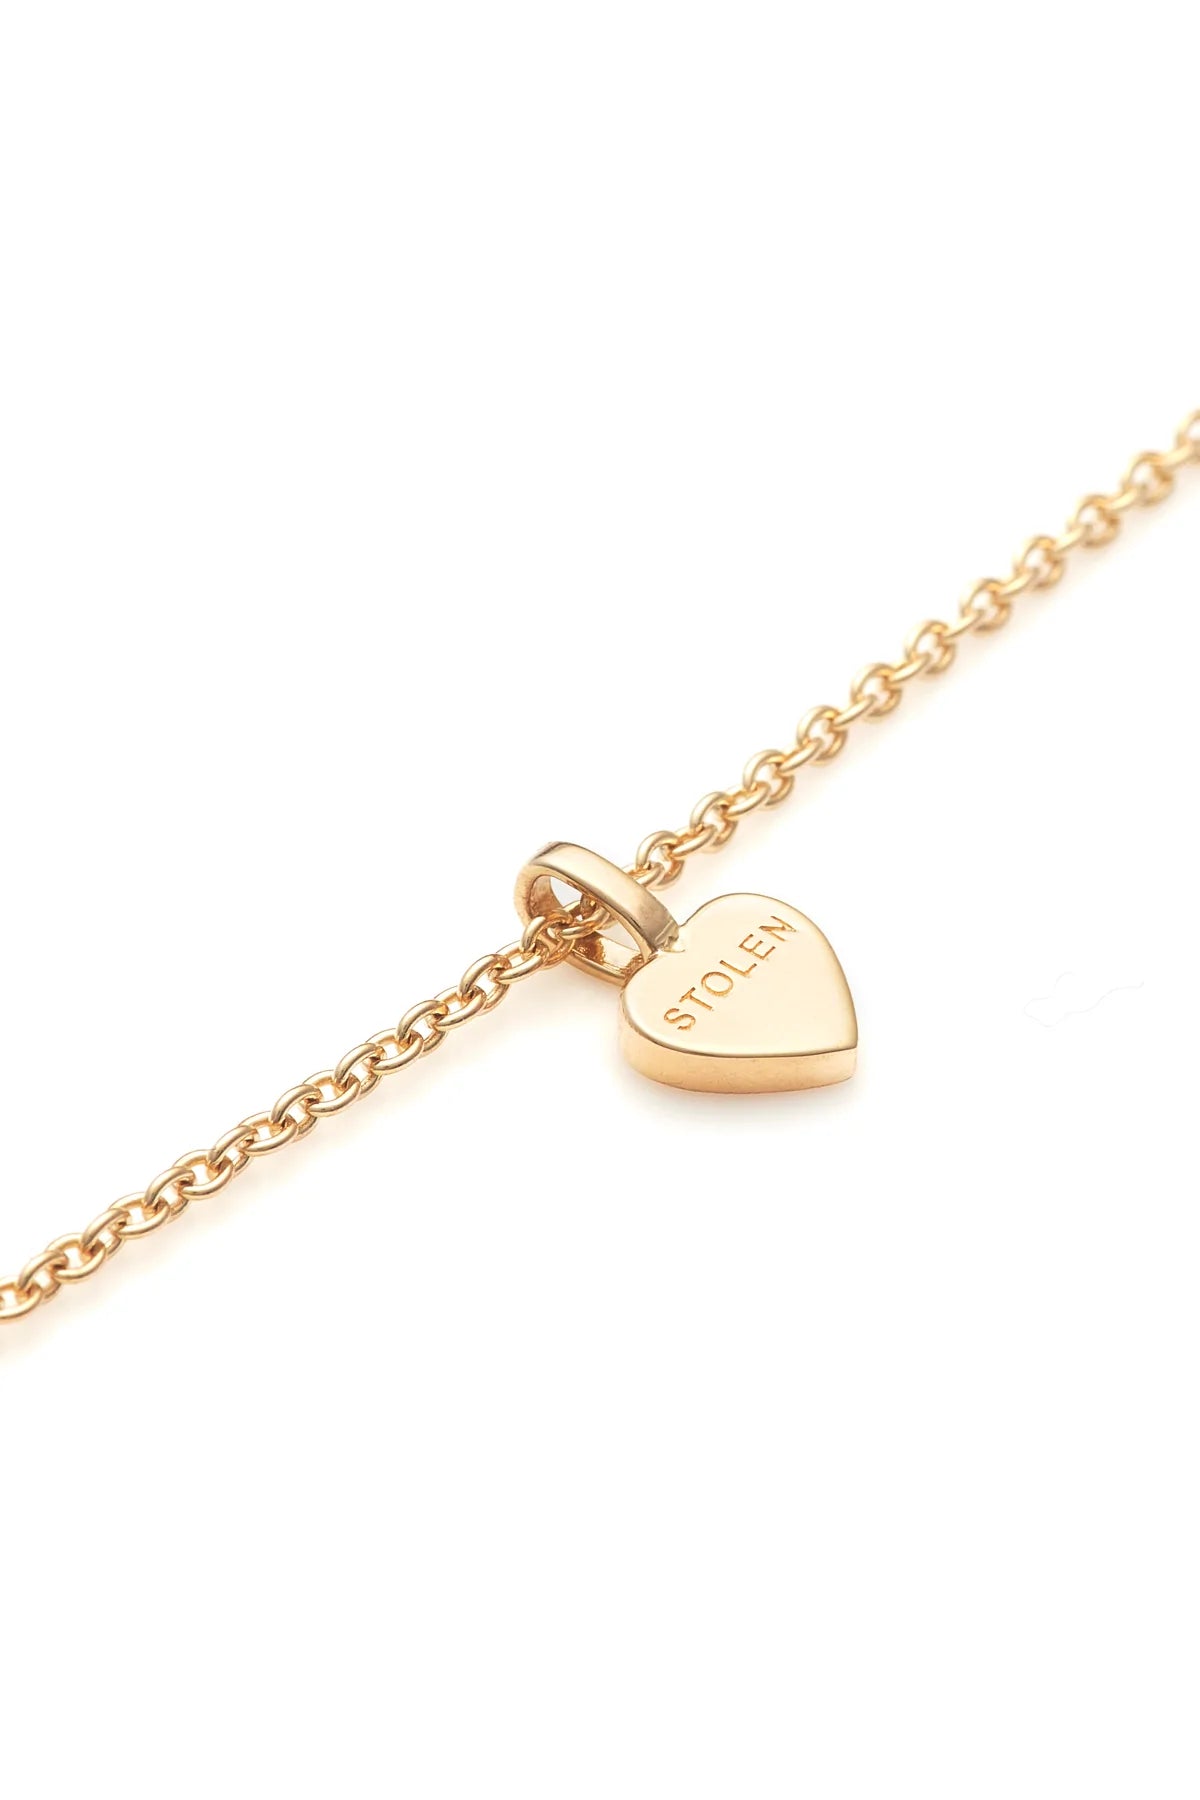 Stolen Girlfriends Club Stolen Heart Necklace - Gold Plated